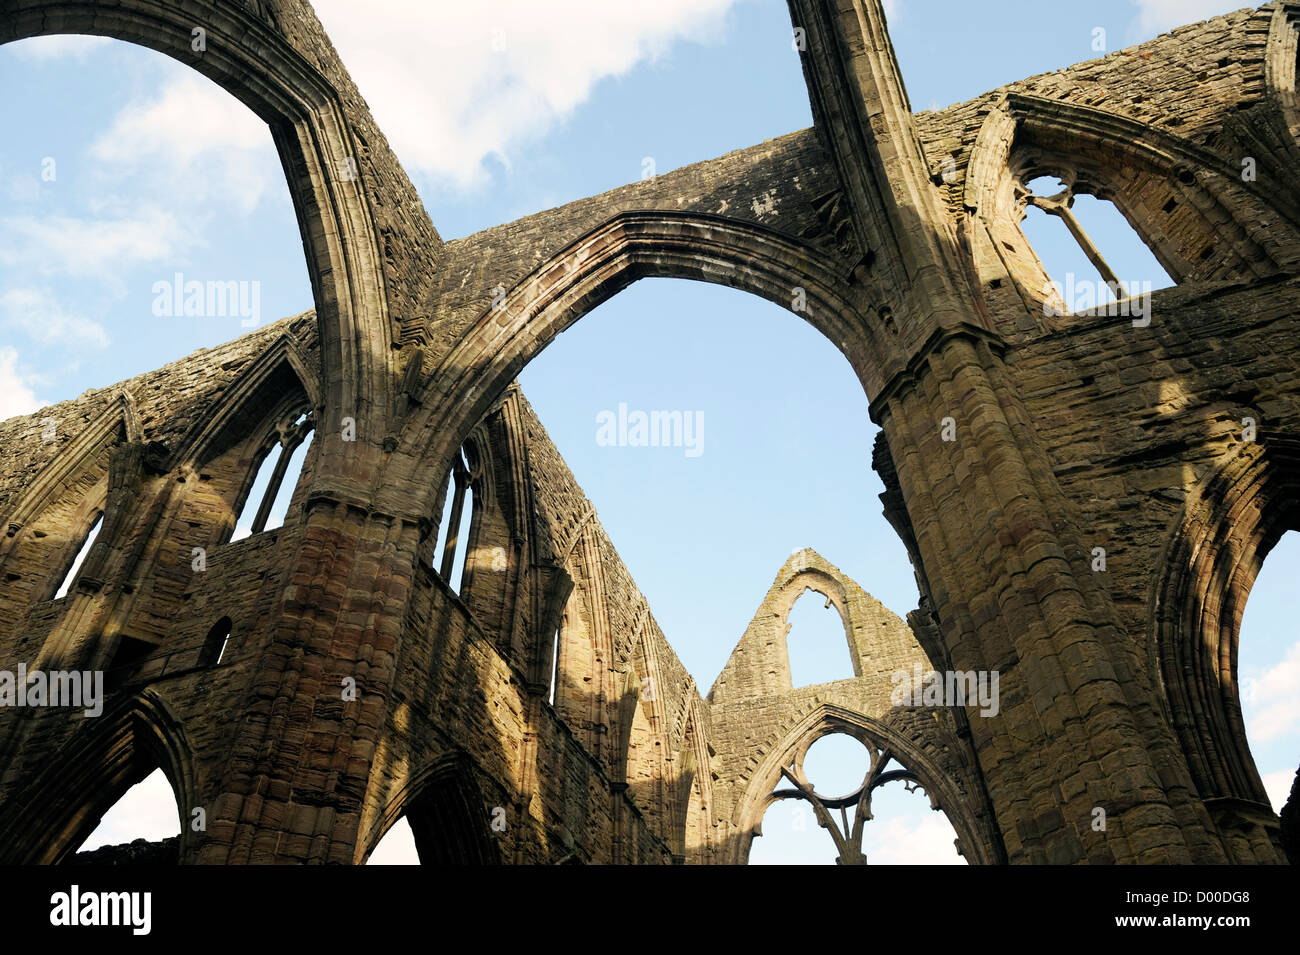 Tintern Abbey im Wye Valley, Monmouthshire, Wales, UK. Zisterziensische christliche Kloster gegründet 1131. Zentralen Querschiff Bögen Stockfoto